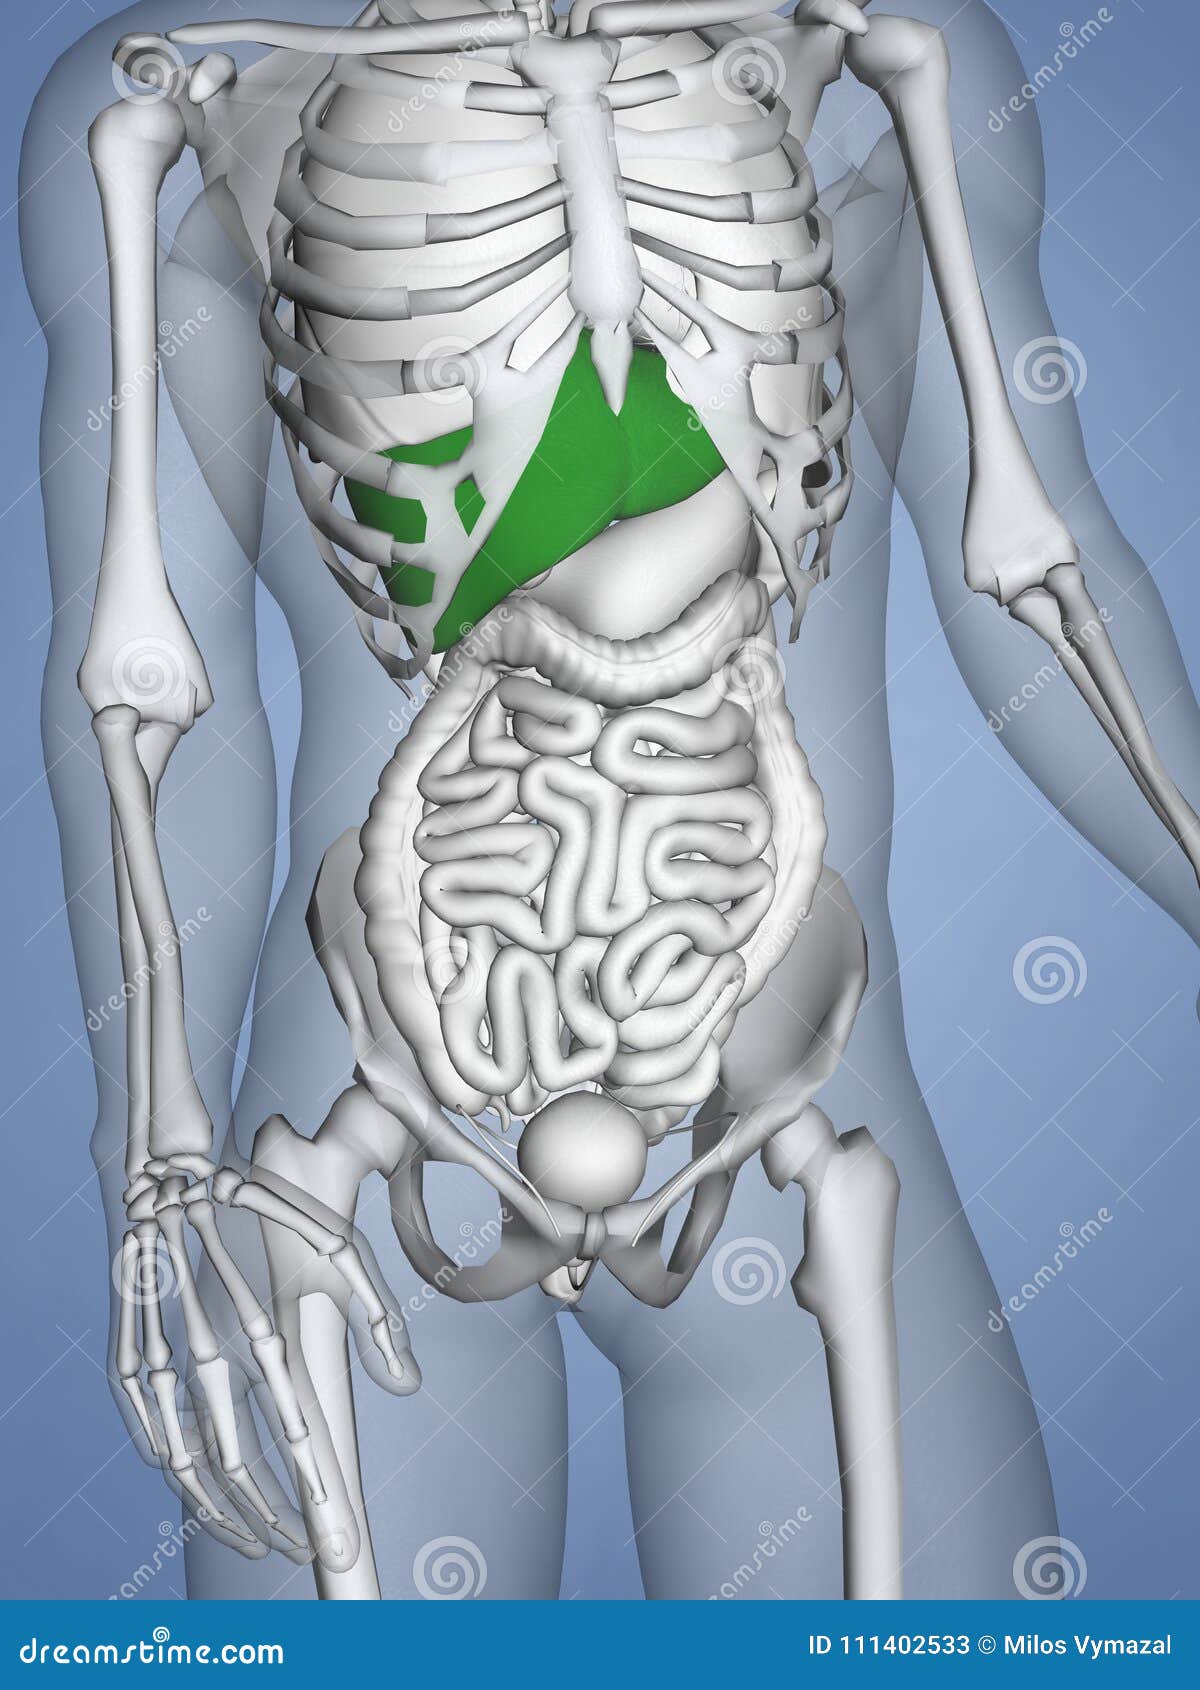 Liver 3d Human Model Stock Illustration Illustration Of Medicine 111402533